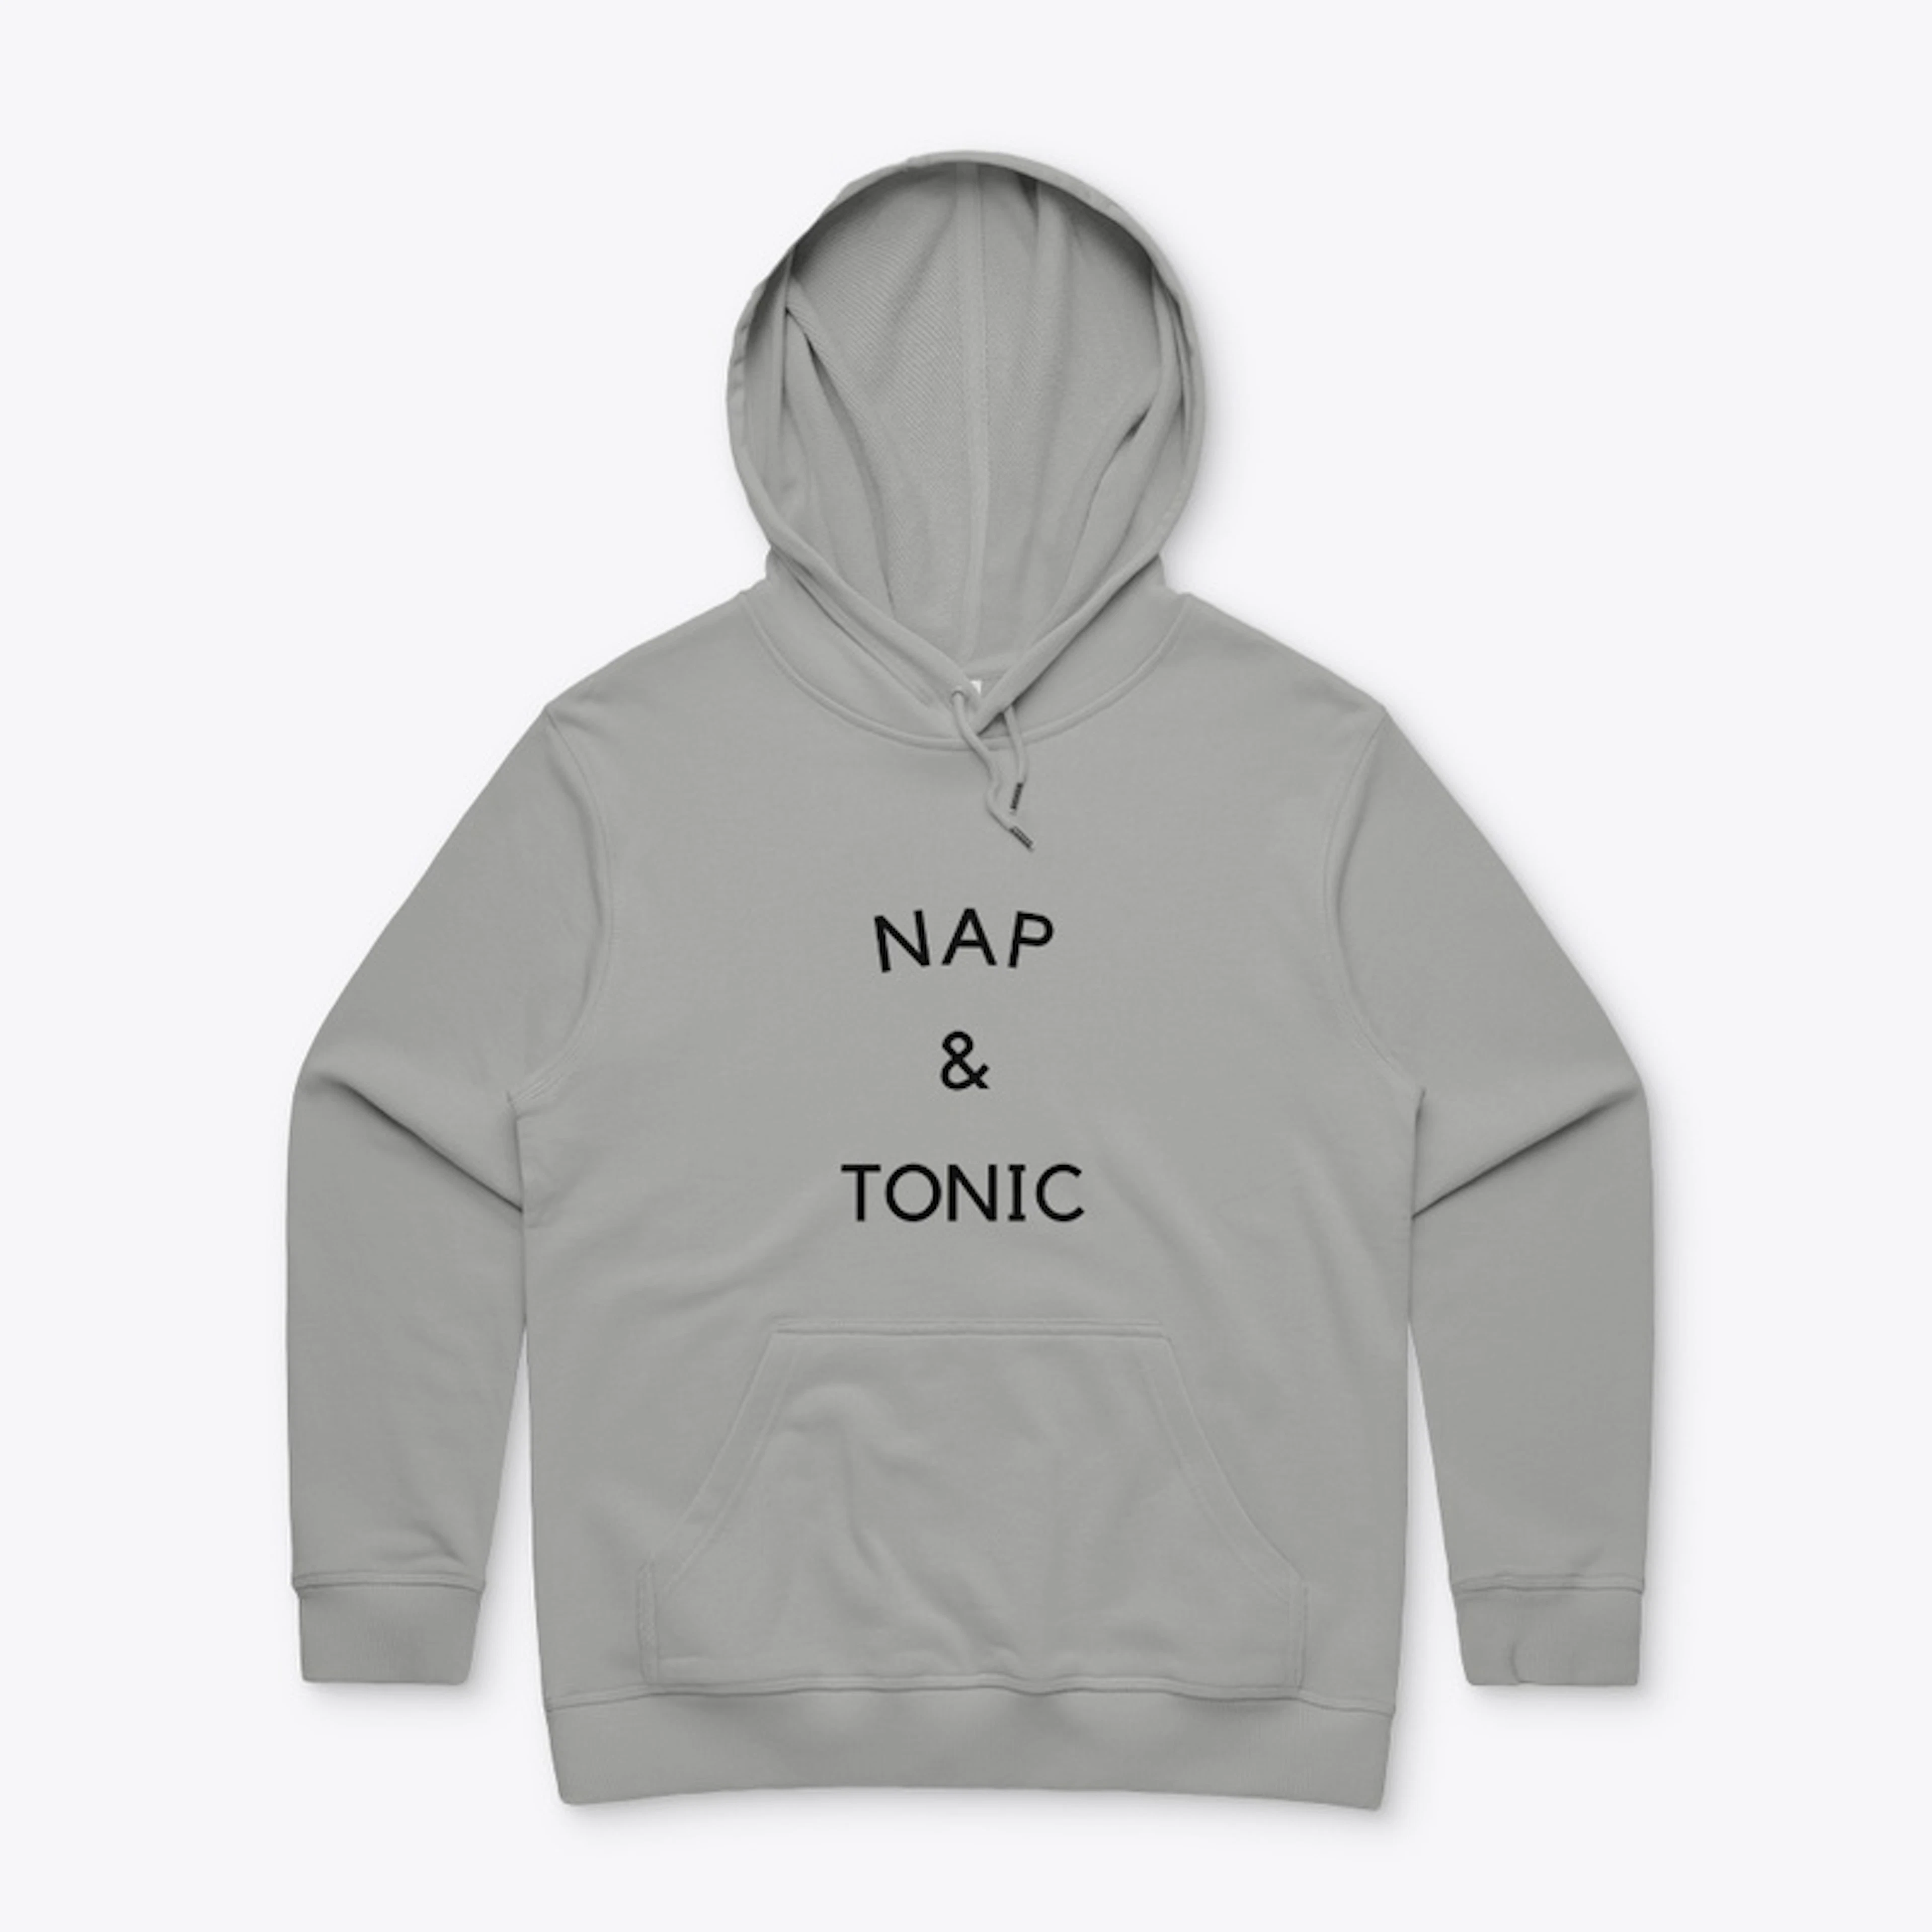 Nap & Tonic